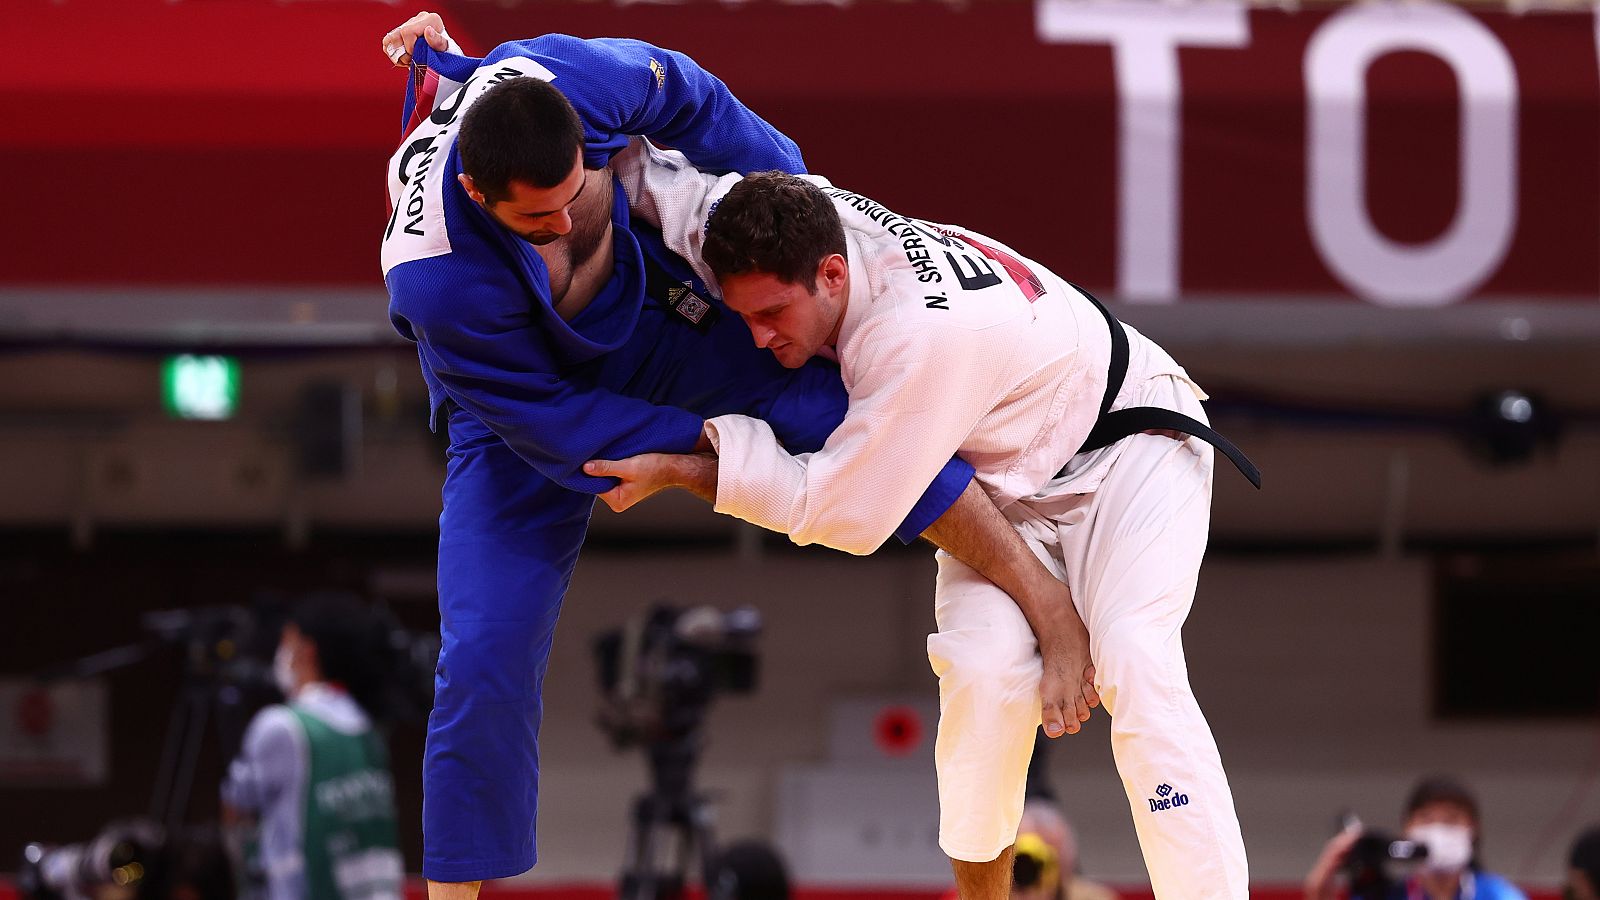 Judo: -90kg Masculino: Nikoloz Sherazadishvili - Mikhail Igolnikov | Tokio 2020